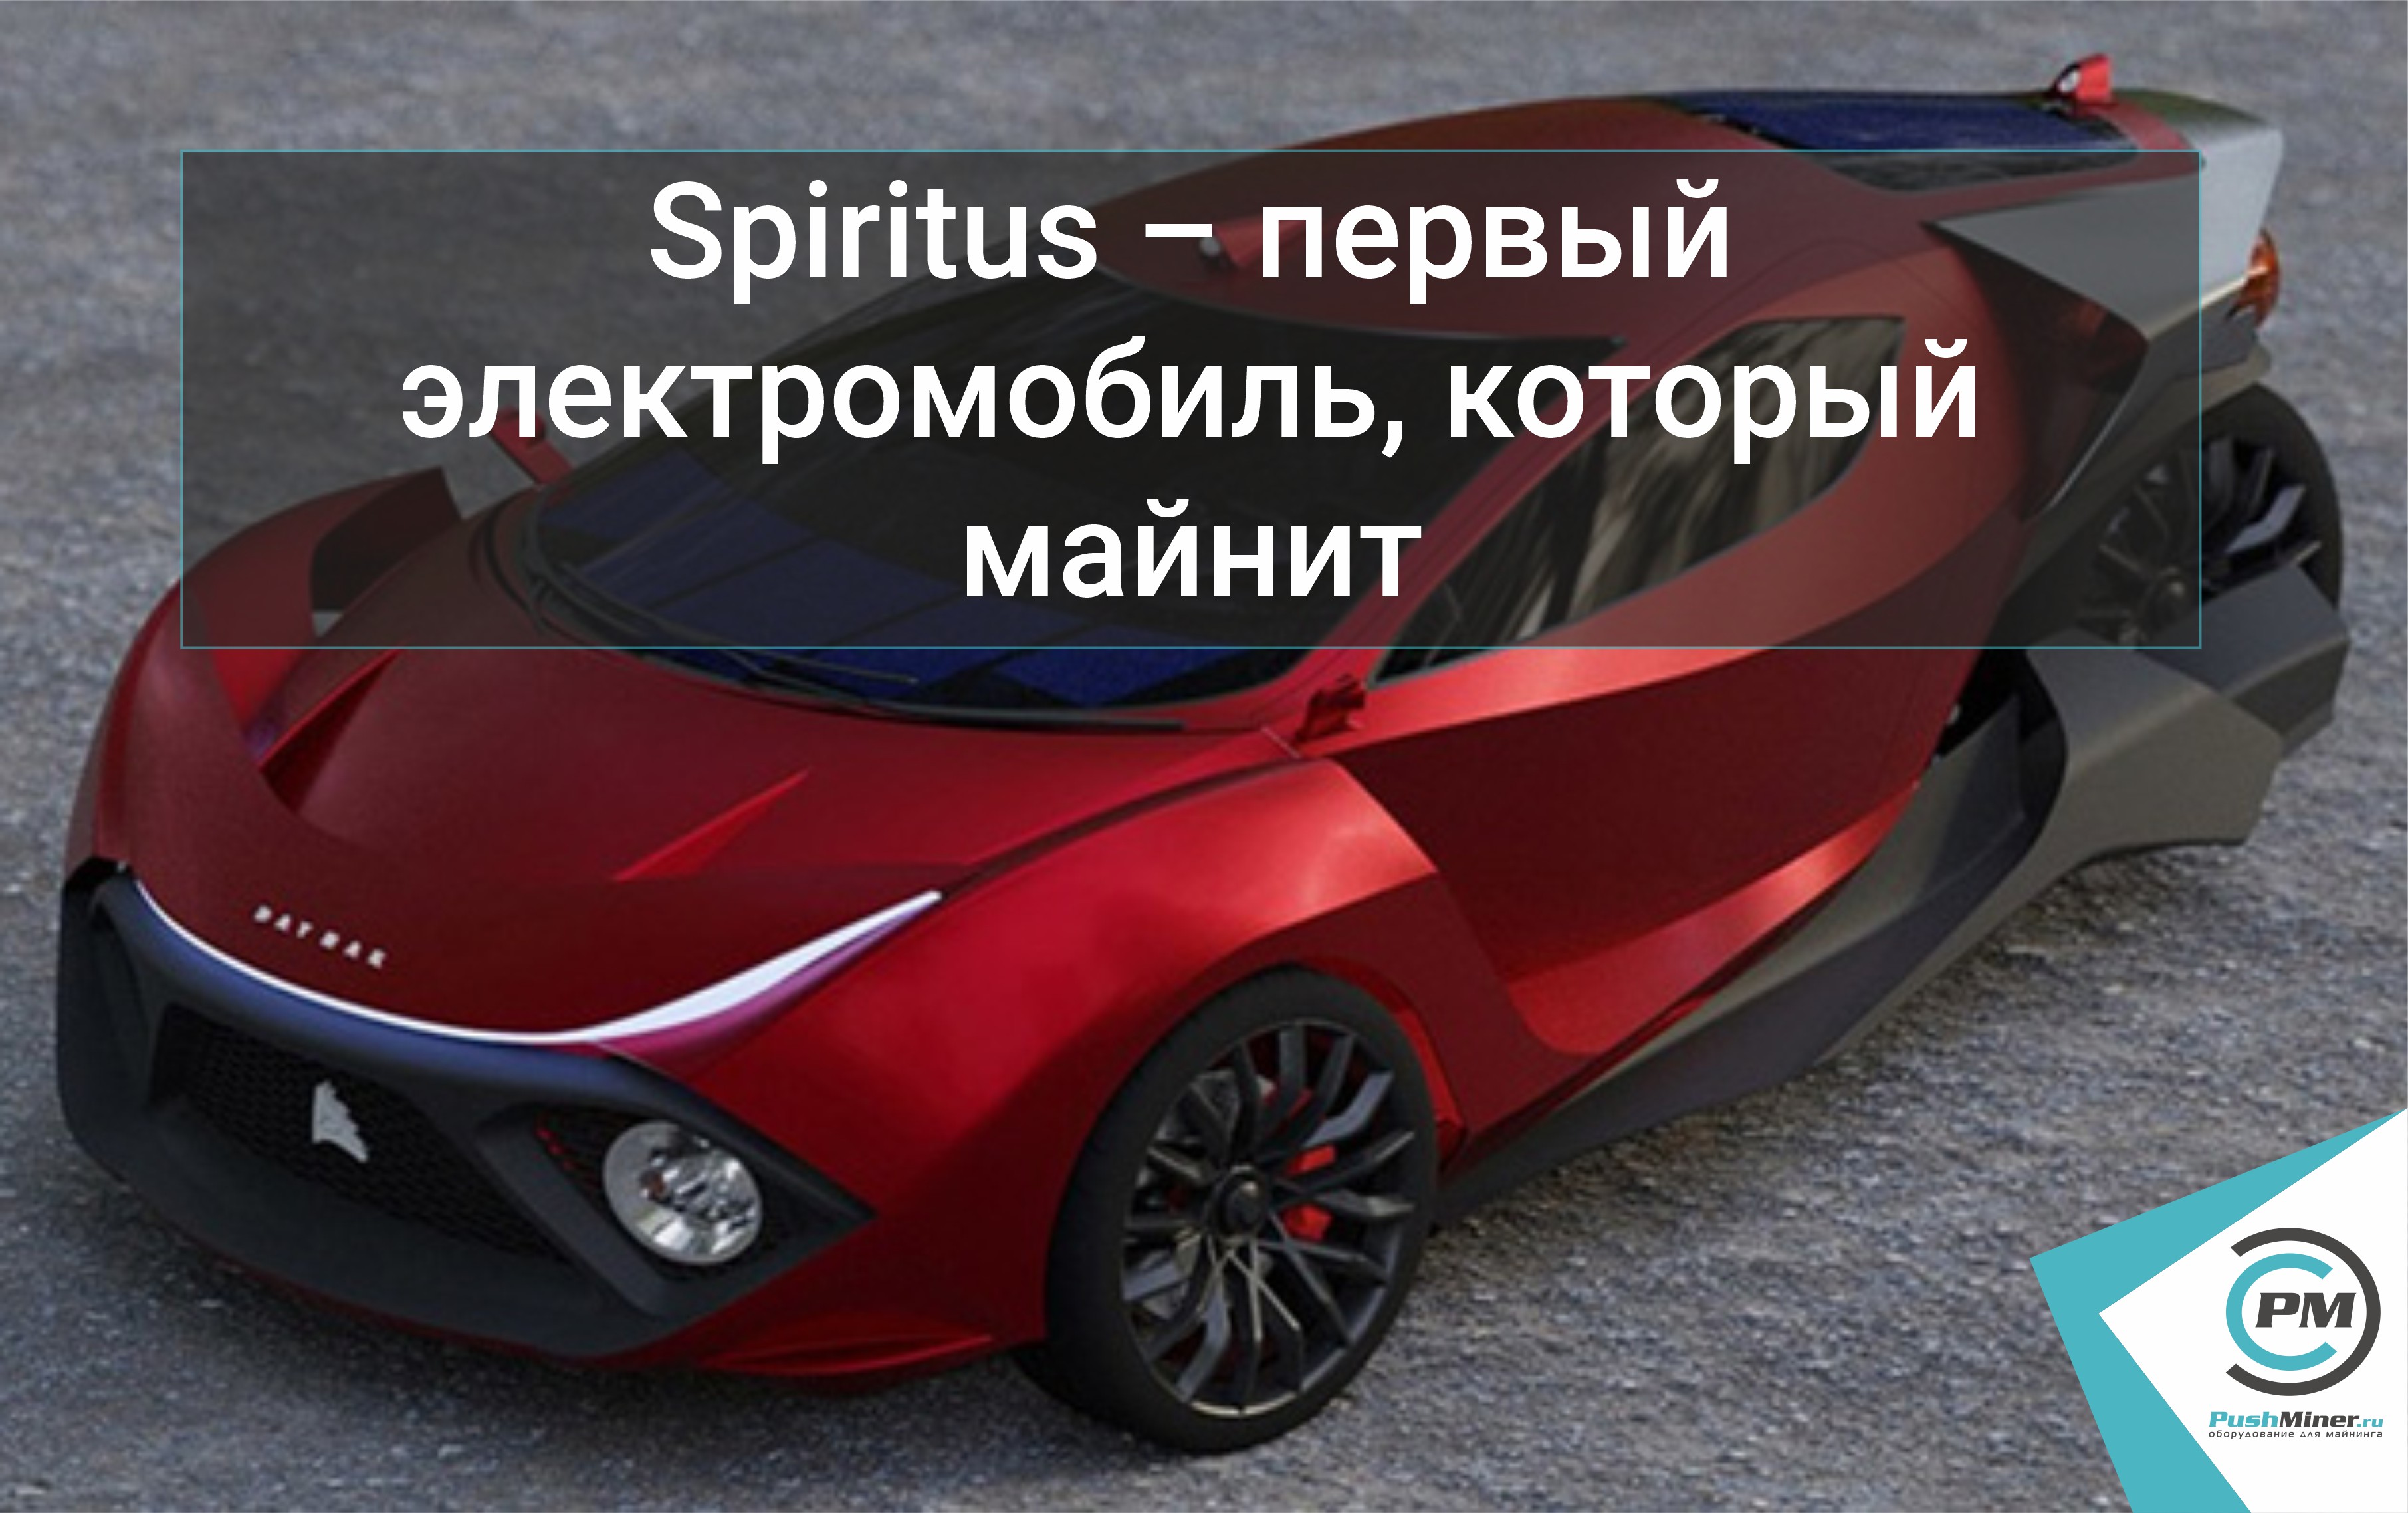 Spiritus – первый электромобиль, который майнит